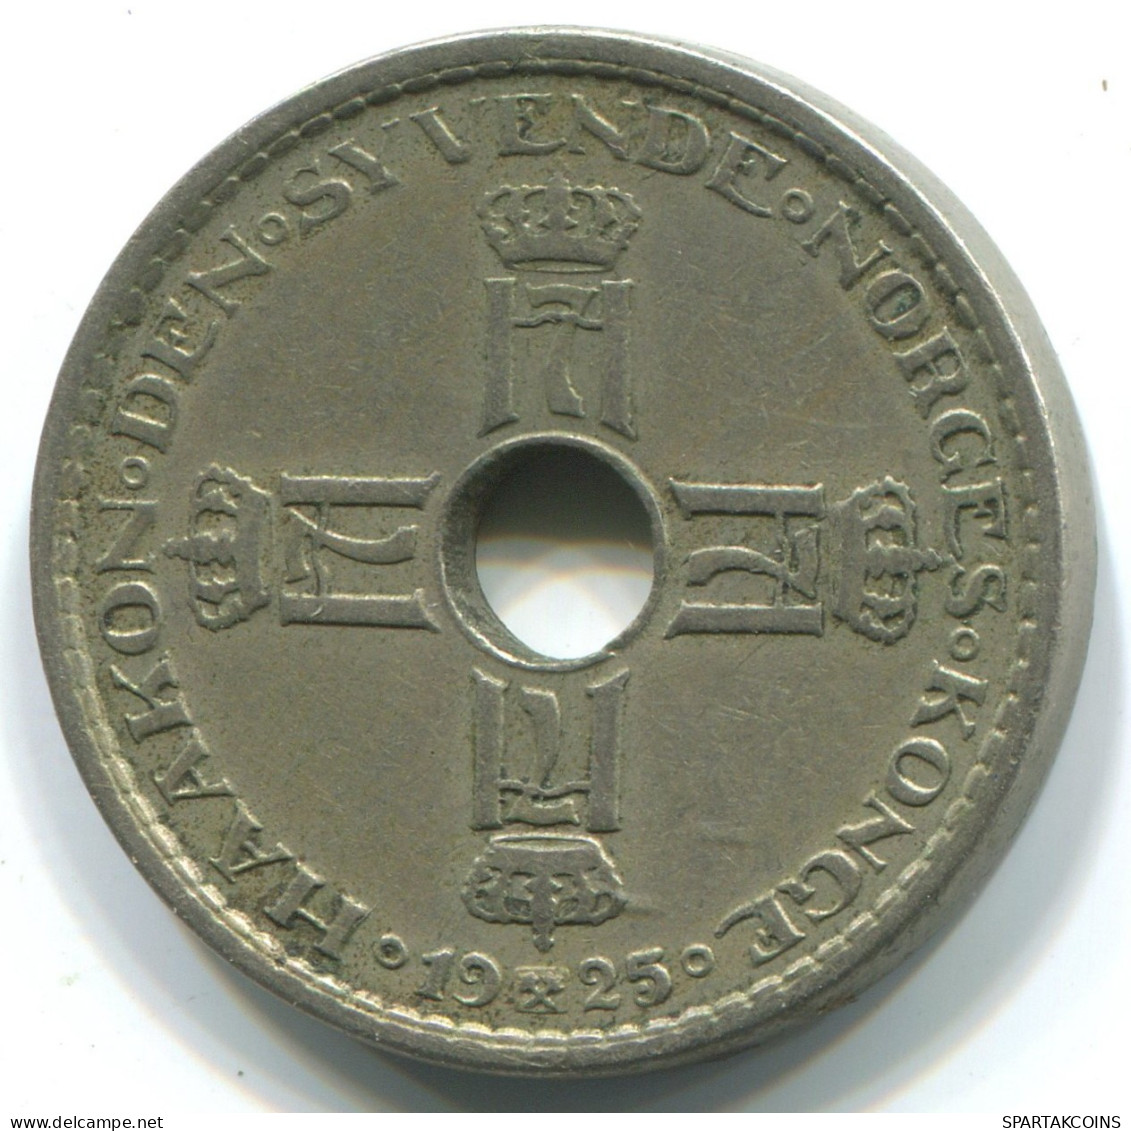 1 KRONE 1925NORUEGA NORWAY Moneda #WW1034.E.A - Noorwegen